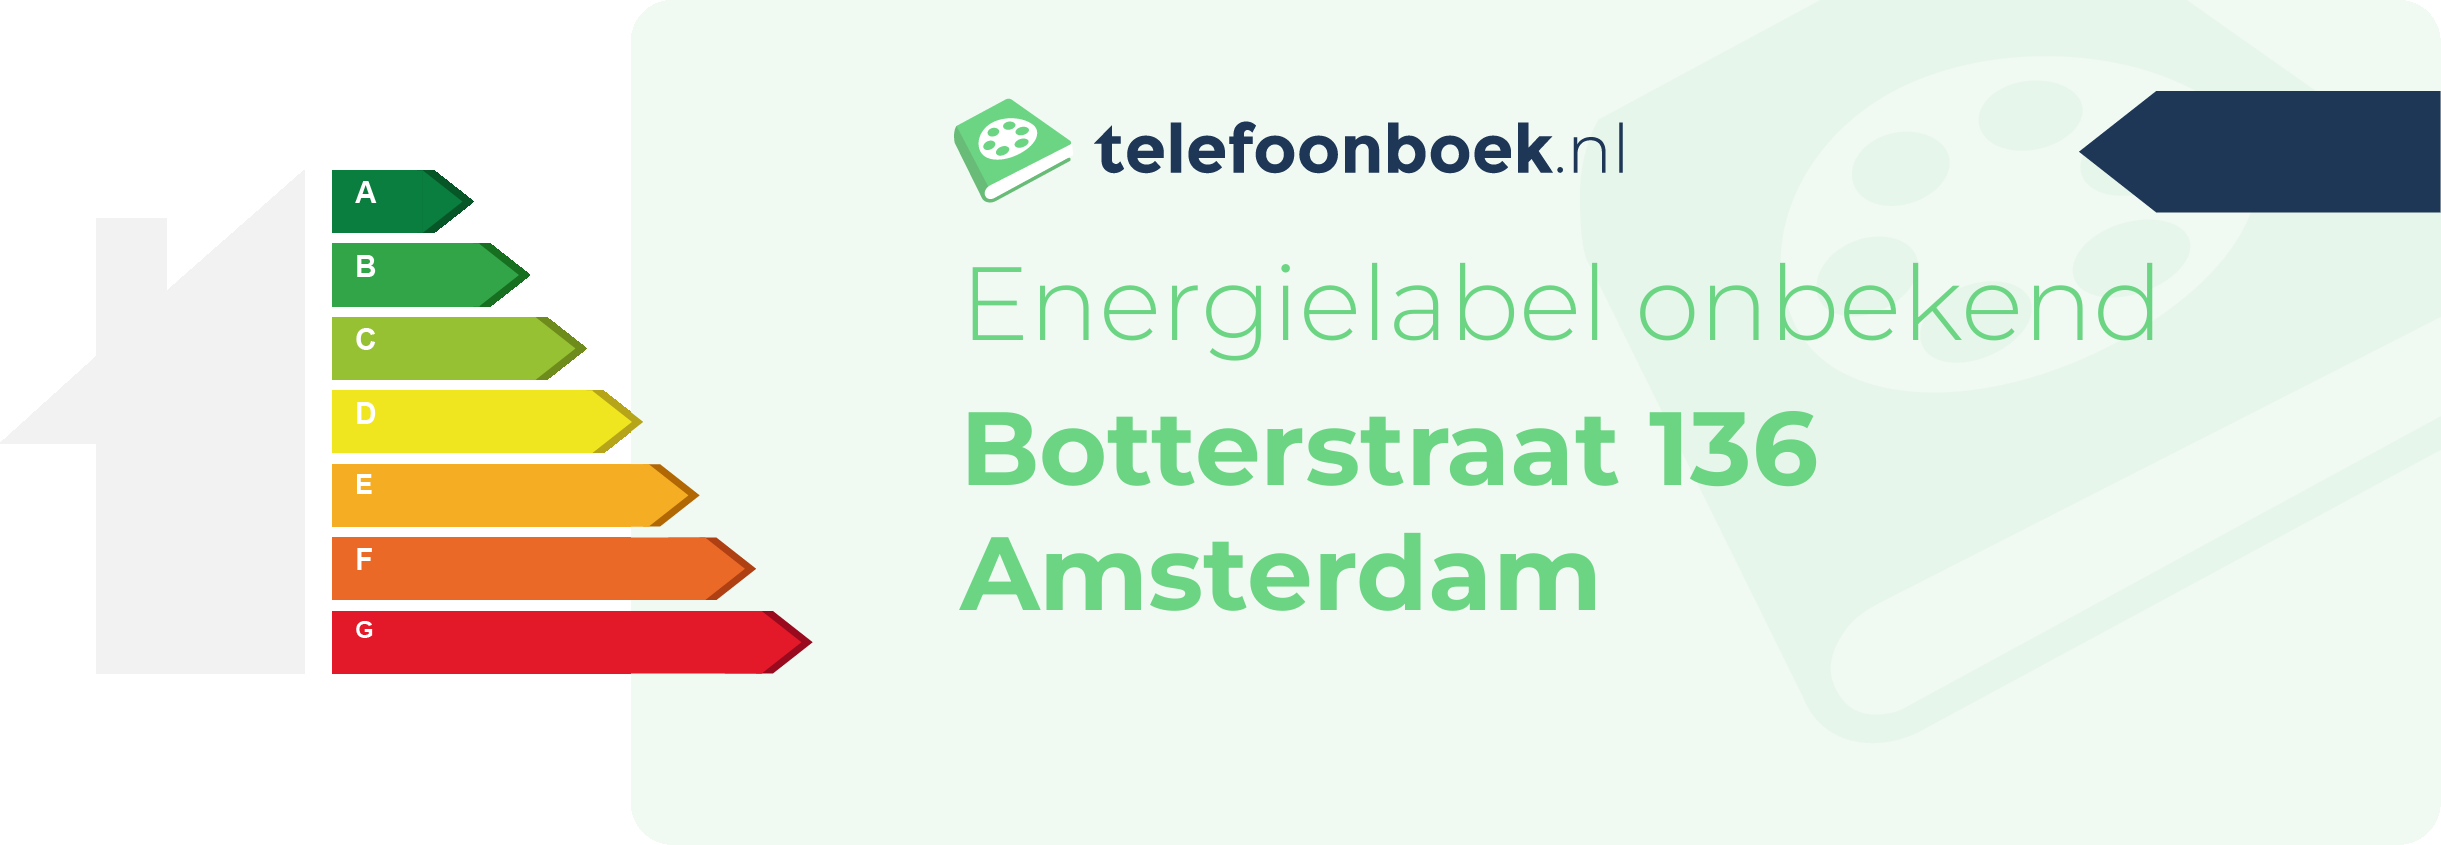 Energielabel Botterstraat 136 Amsterdam